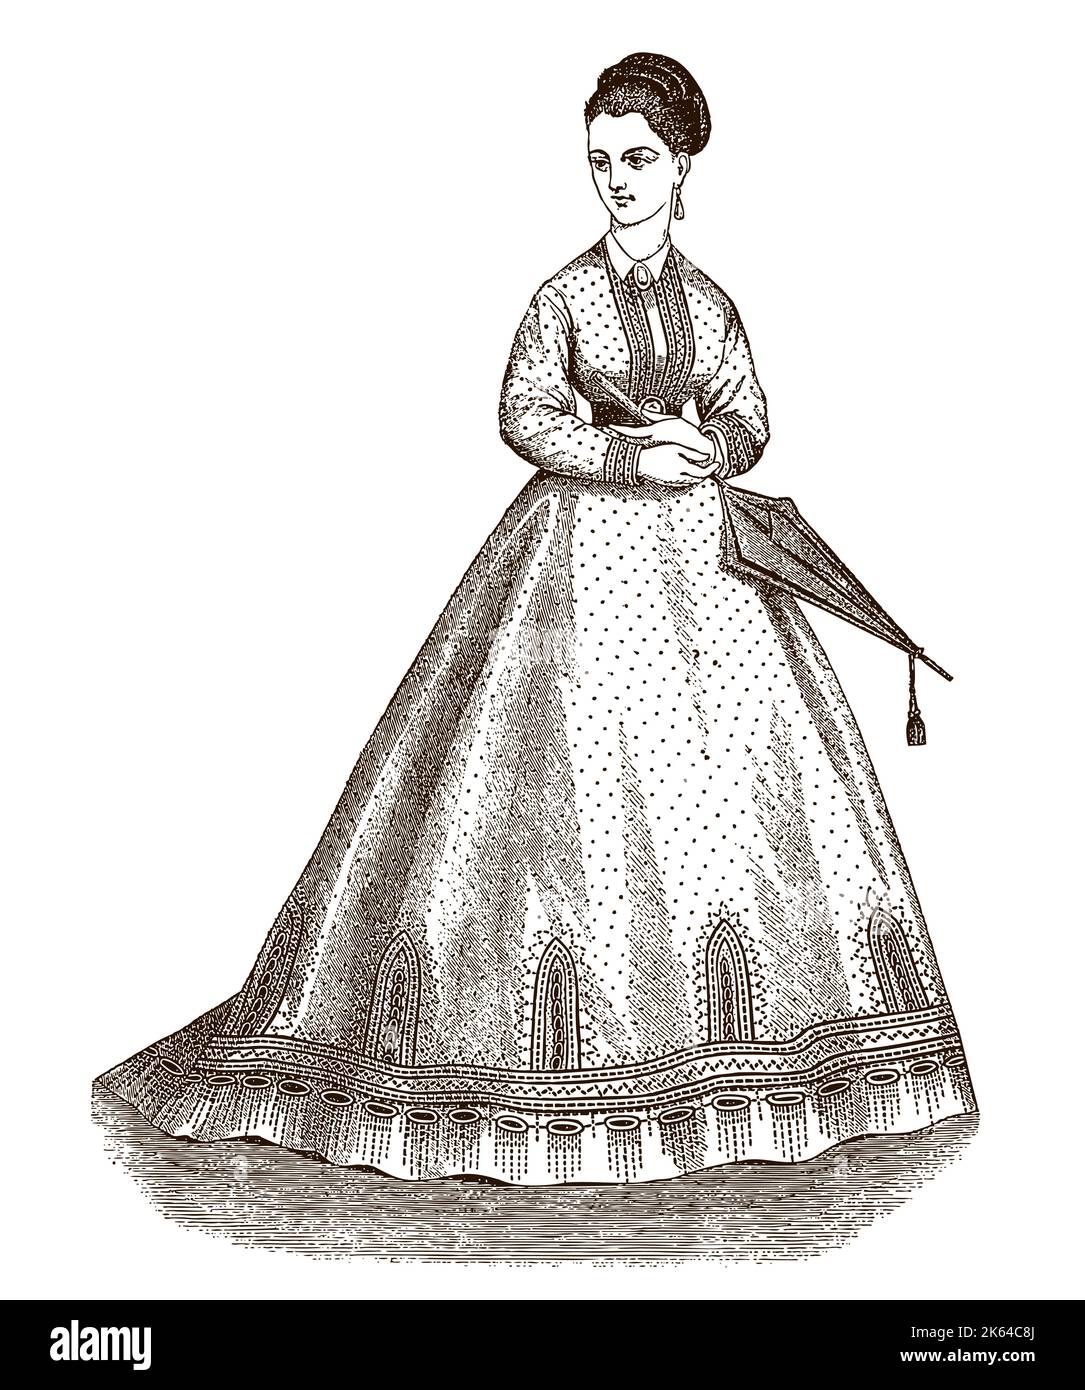 Giovane donna dell'epoca vittoriana che indossa un lungo abito percalato punteggiato, tenendo l'ombrello chiuso Illustrazione Vettoriale